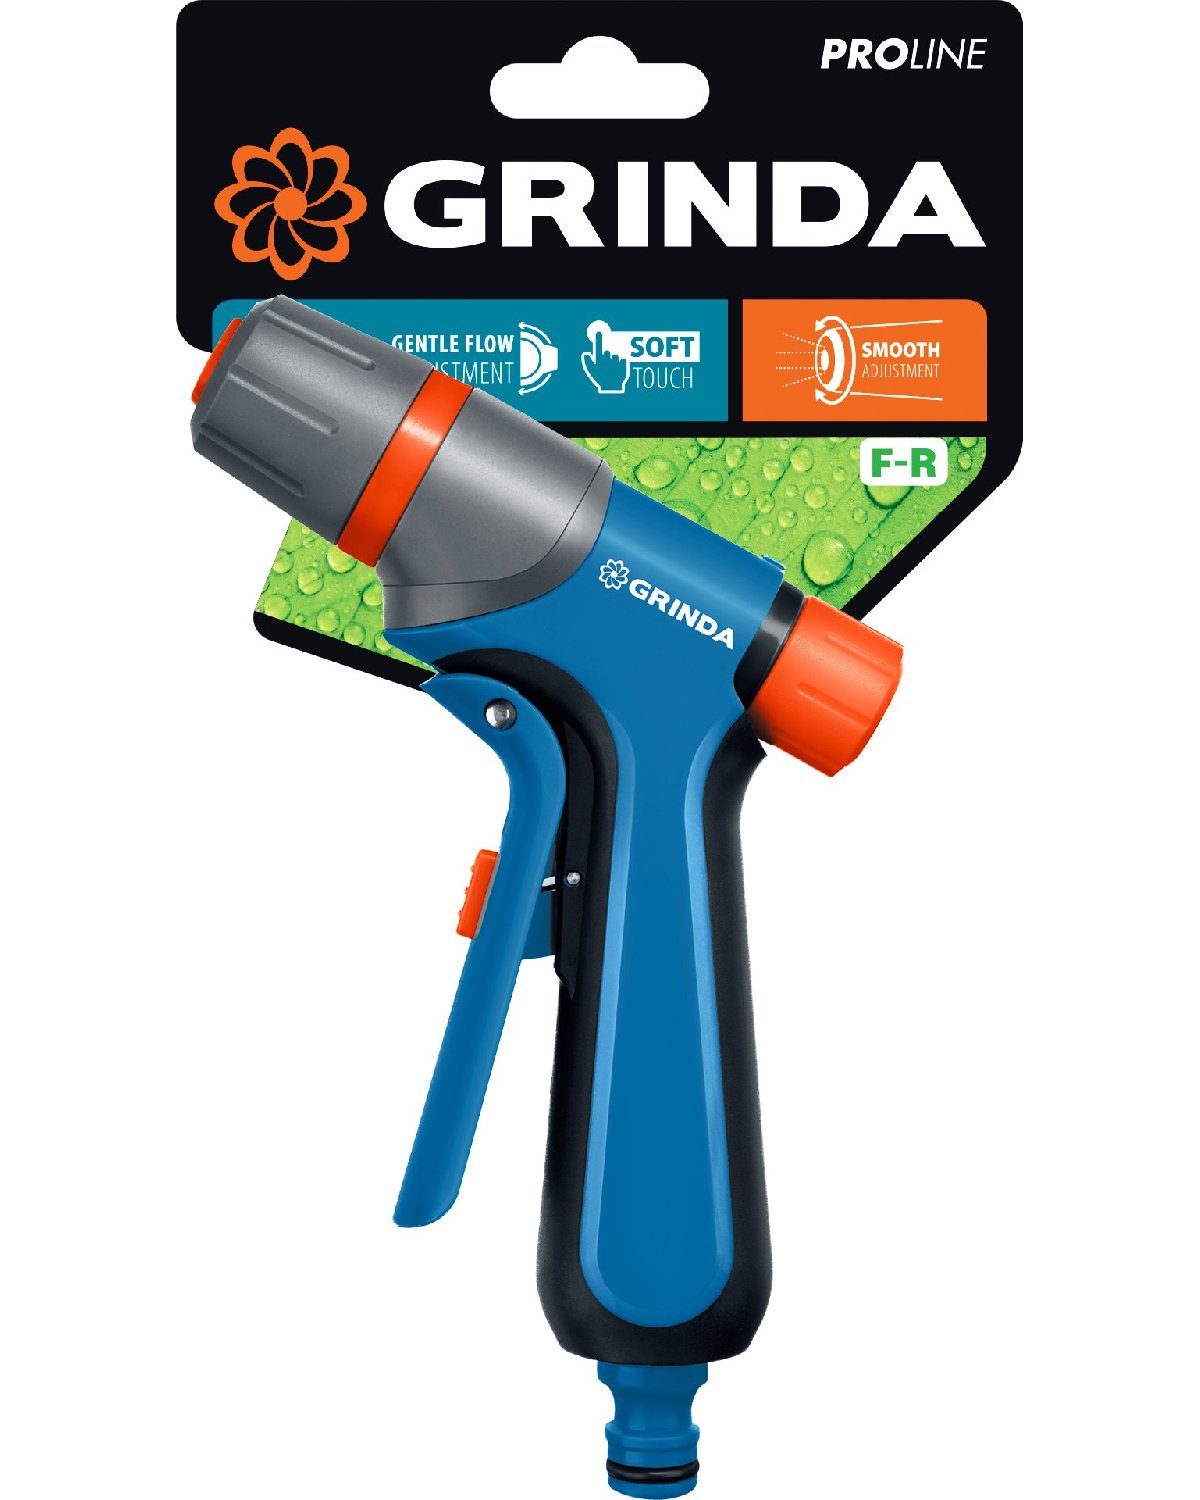 GRINDA F-R, курок спереди, двухкомпонентный, плавная регулировка напора, поливочный пистолет, PROLine (429121) (429121_z01)